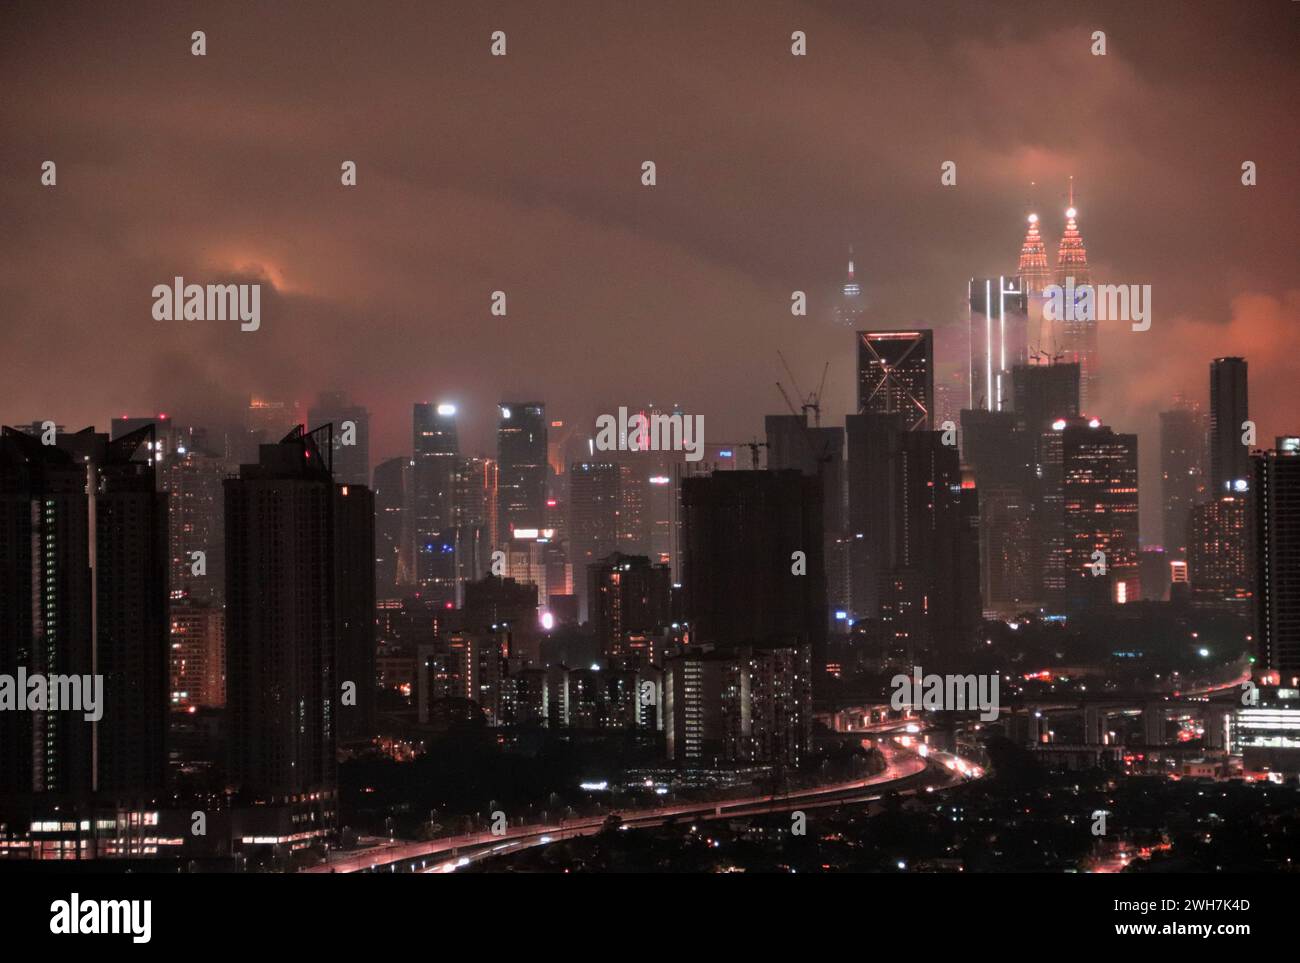 L'horizon de Kuala Lumpur avec les tours jumelles Petronas illuminées pour le nouvel an chinois et entourées de nuages bas KL, Malaisie. Banque D'Images